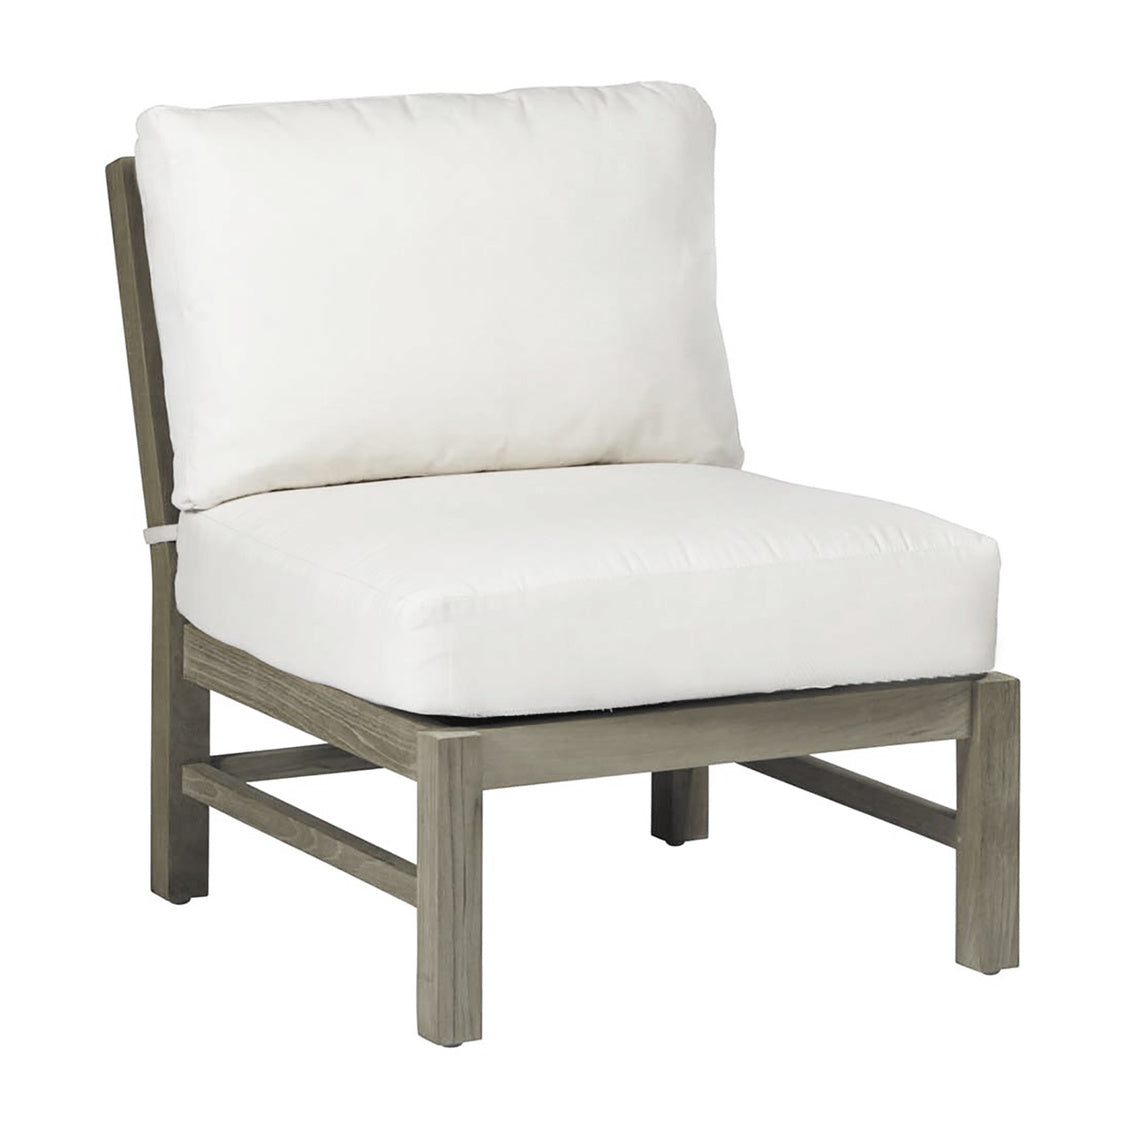 Club Teak Sectional Slipper Chair with Dream Cushion